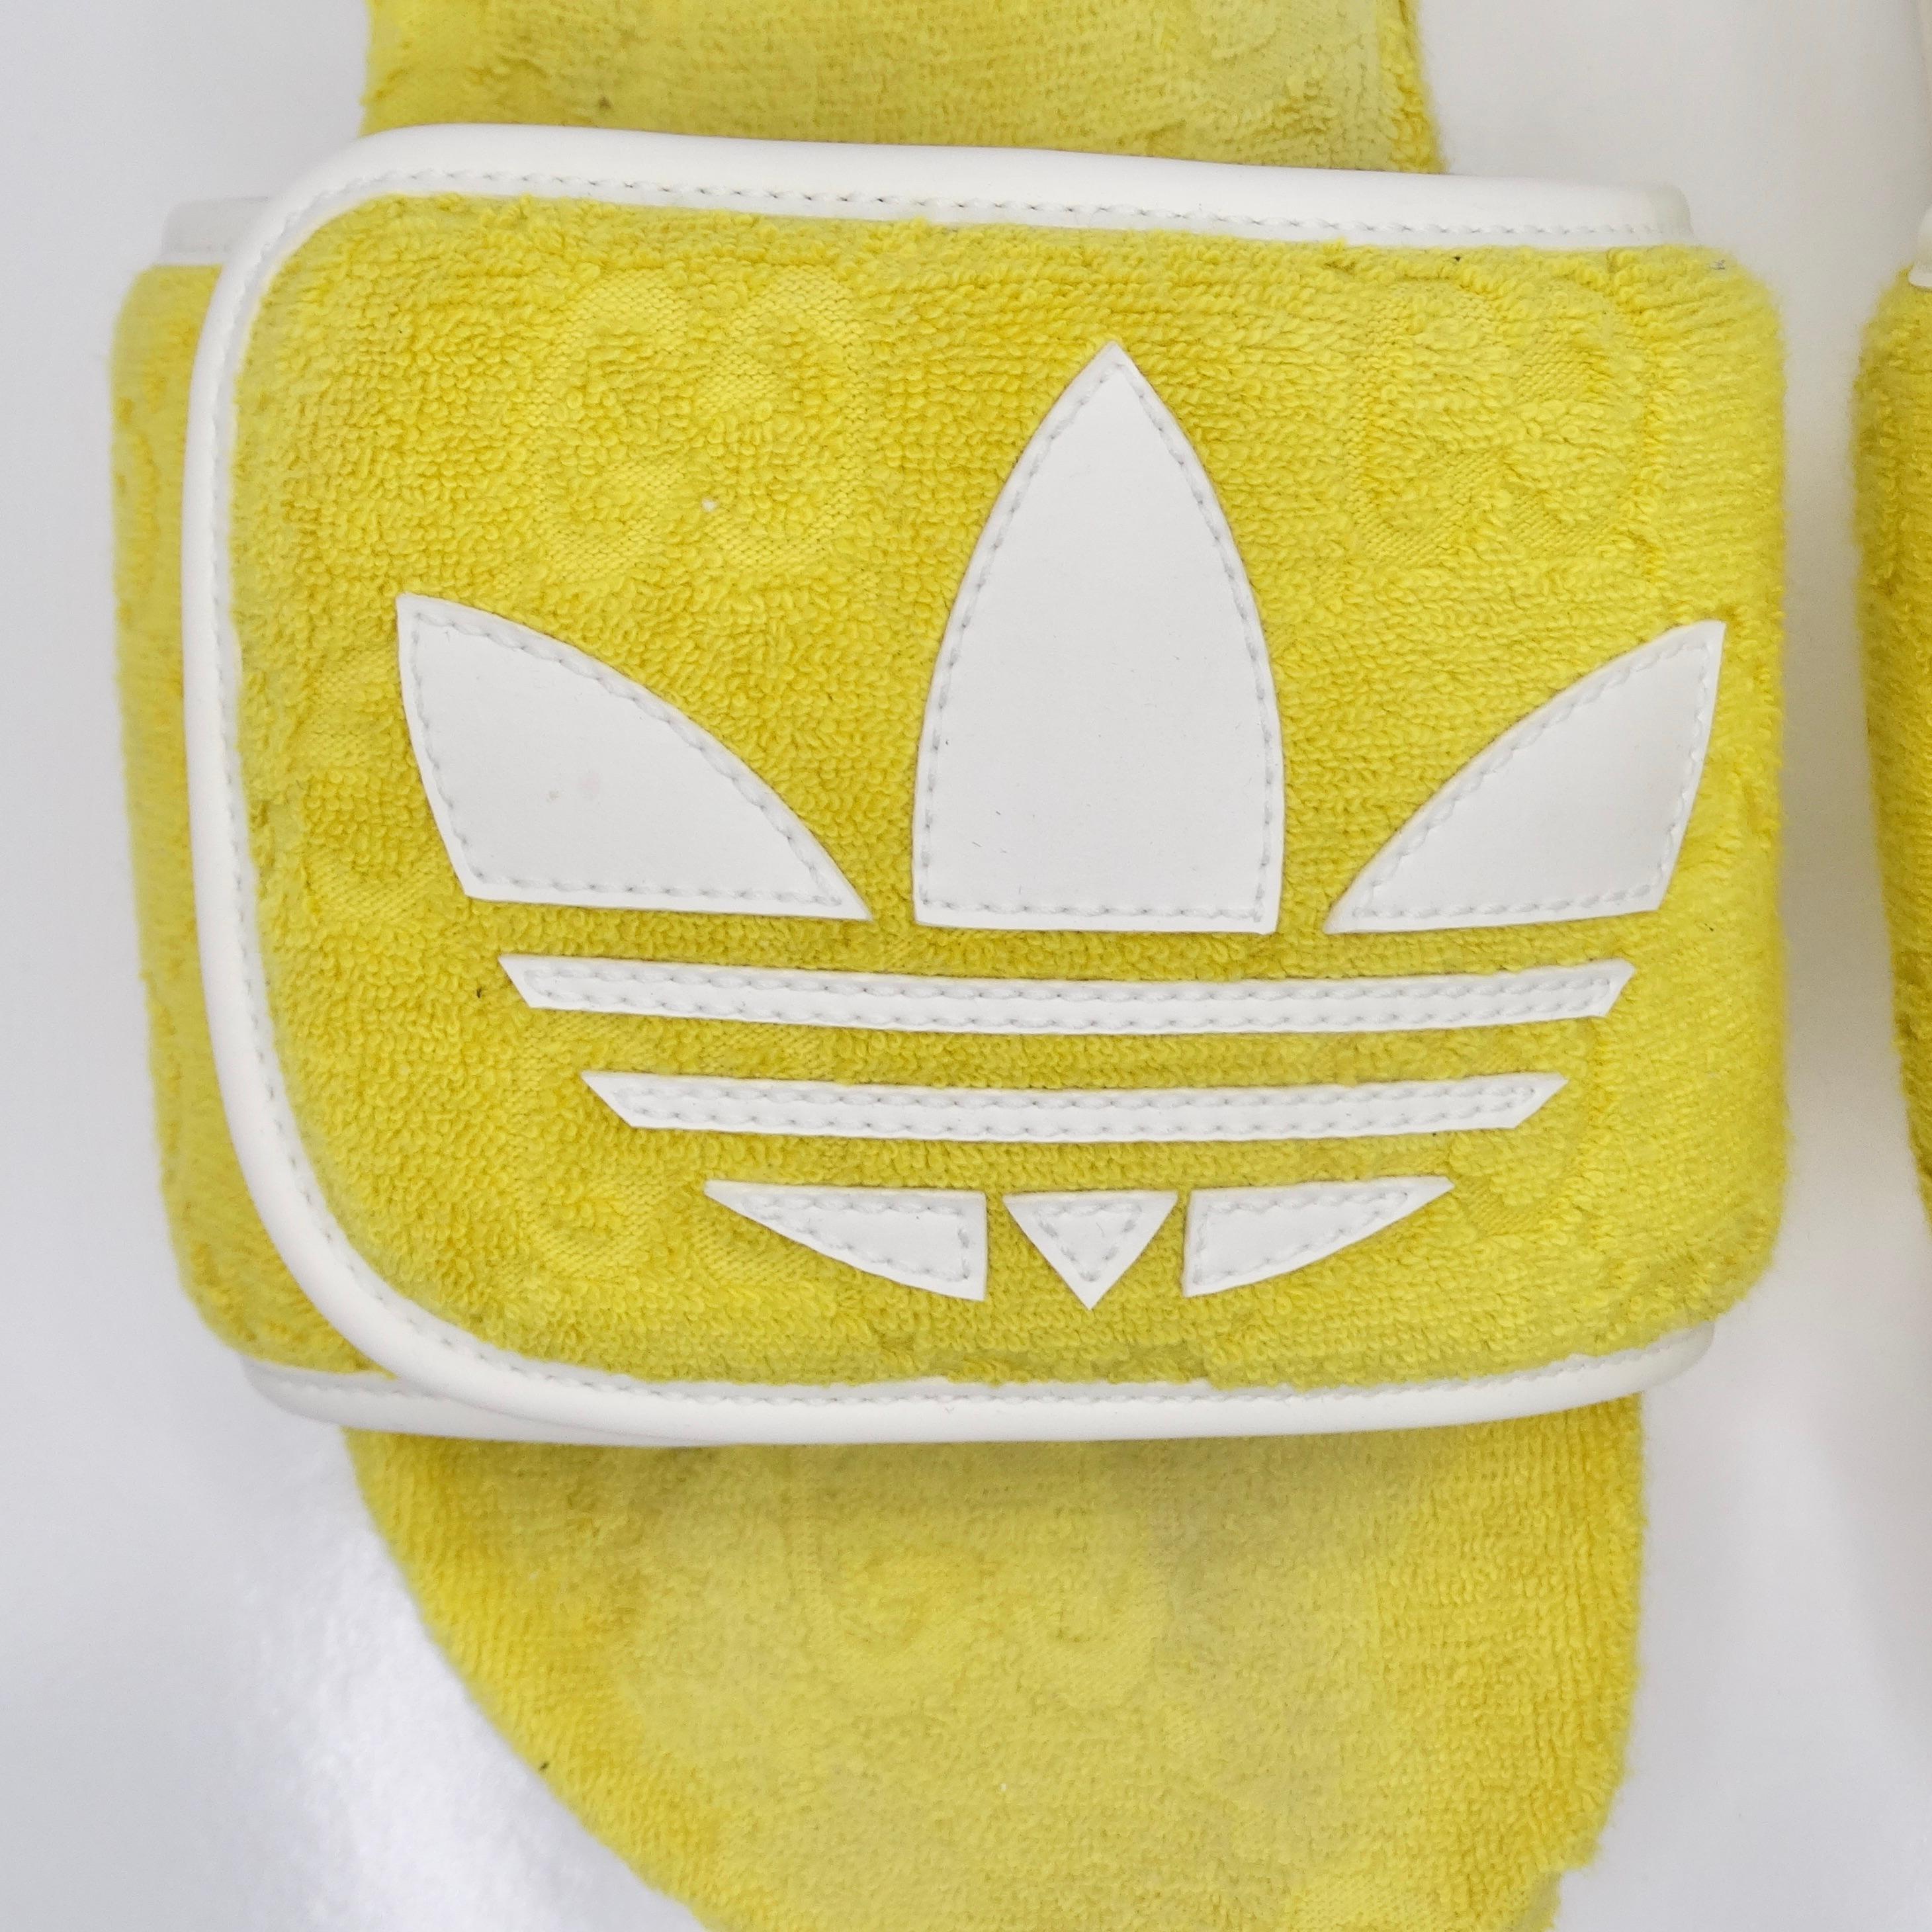 Voici les Gucci X Adidas Yellow Terry Cloth GG Monogram Platform Sandals - une collaboration vibrante et élégante qui associe l'emblématique monogramme Gucci GG à l'esthétique sportive d'Adidas. Fabriquées en tissu éponge doux dans une teinte jaune